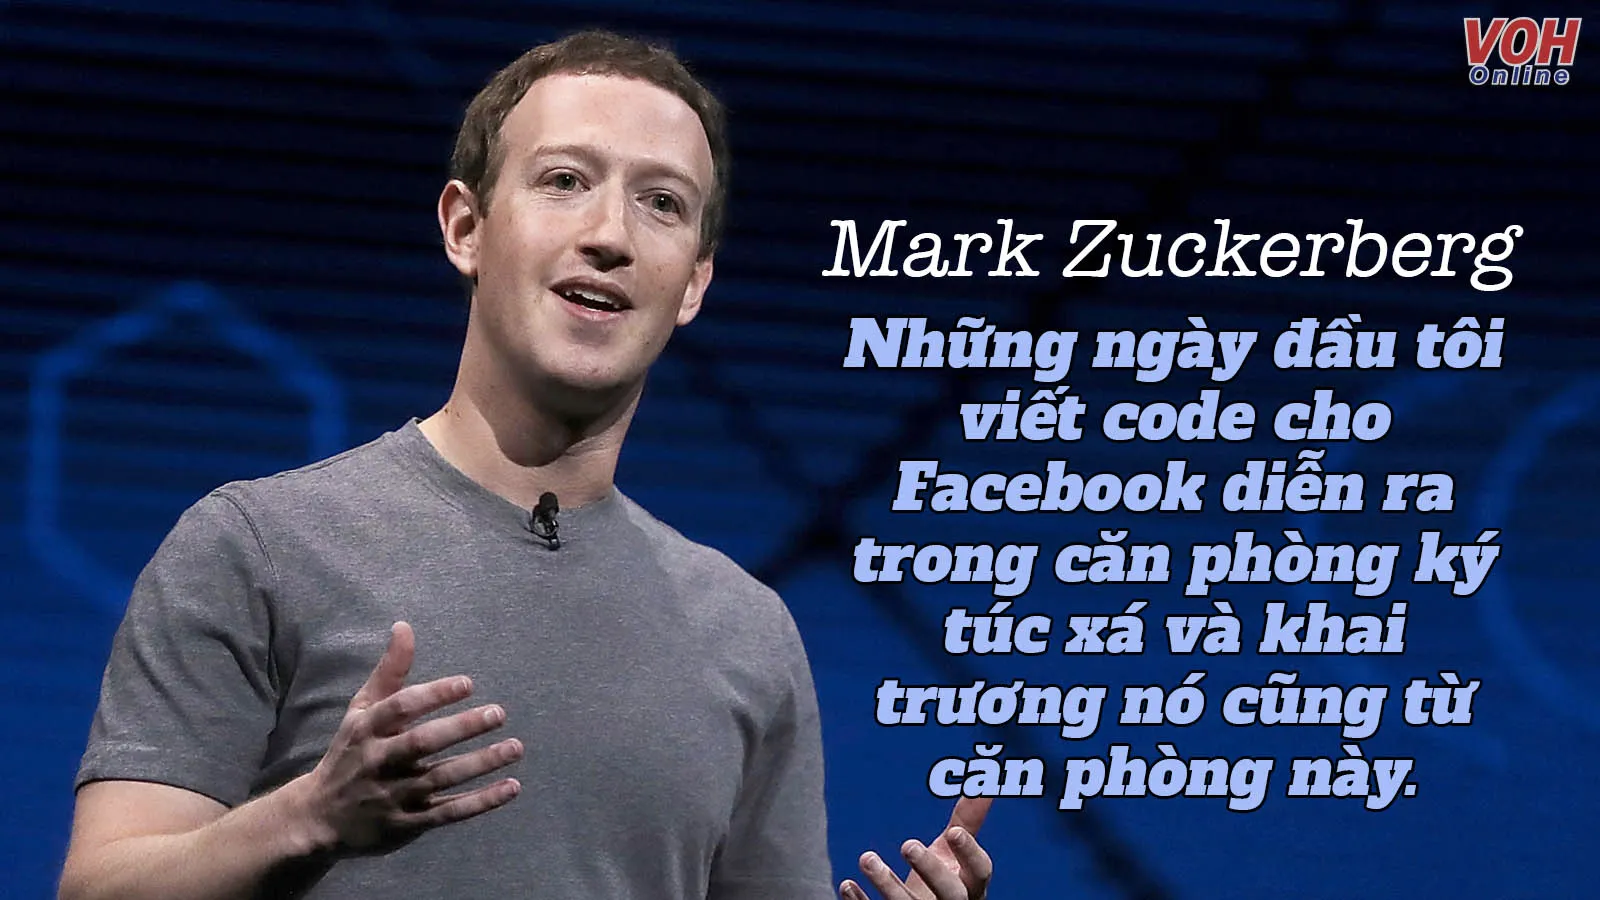 Mark Zuckerberg là ai? 15 câu nói hay nhất của người sáng lập Facebook Mark Zuckerberg